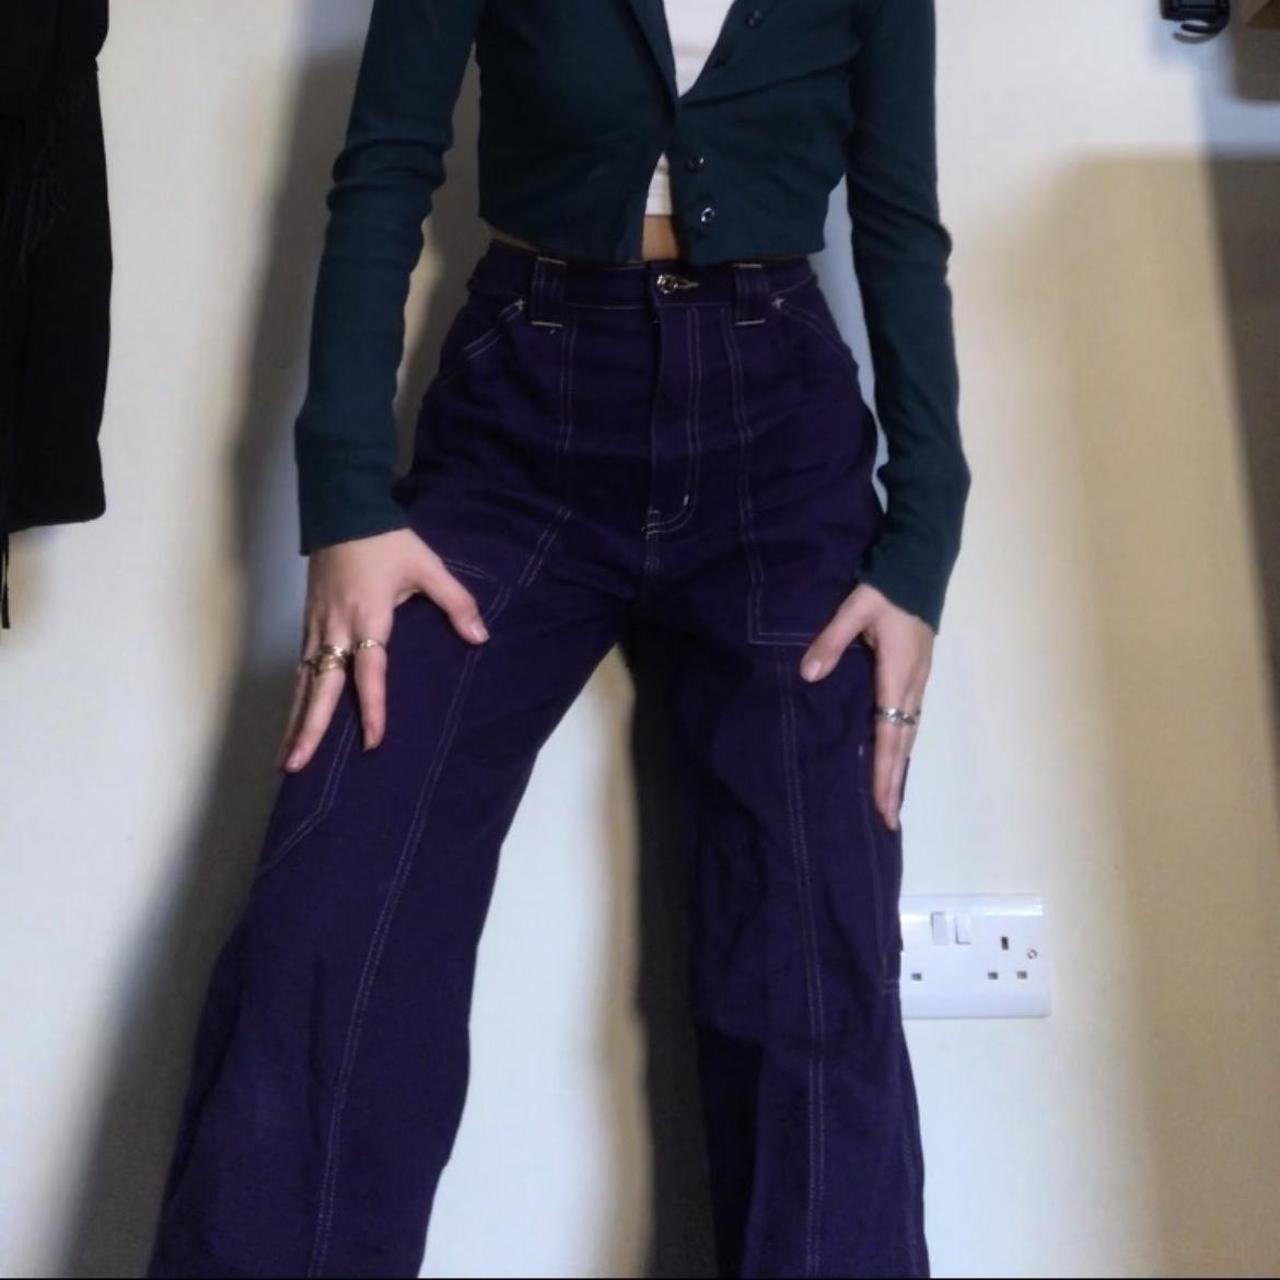 Women's Purple Jeans | Depop